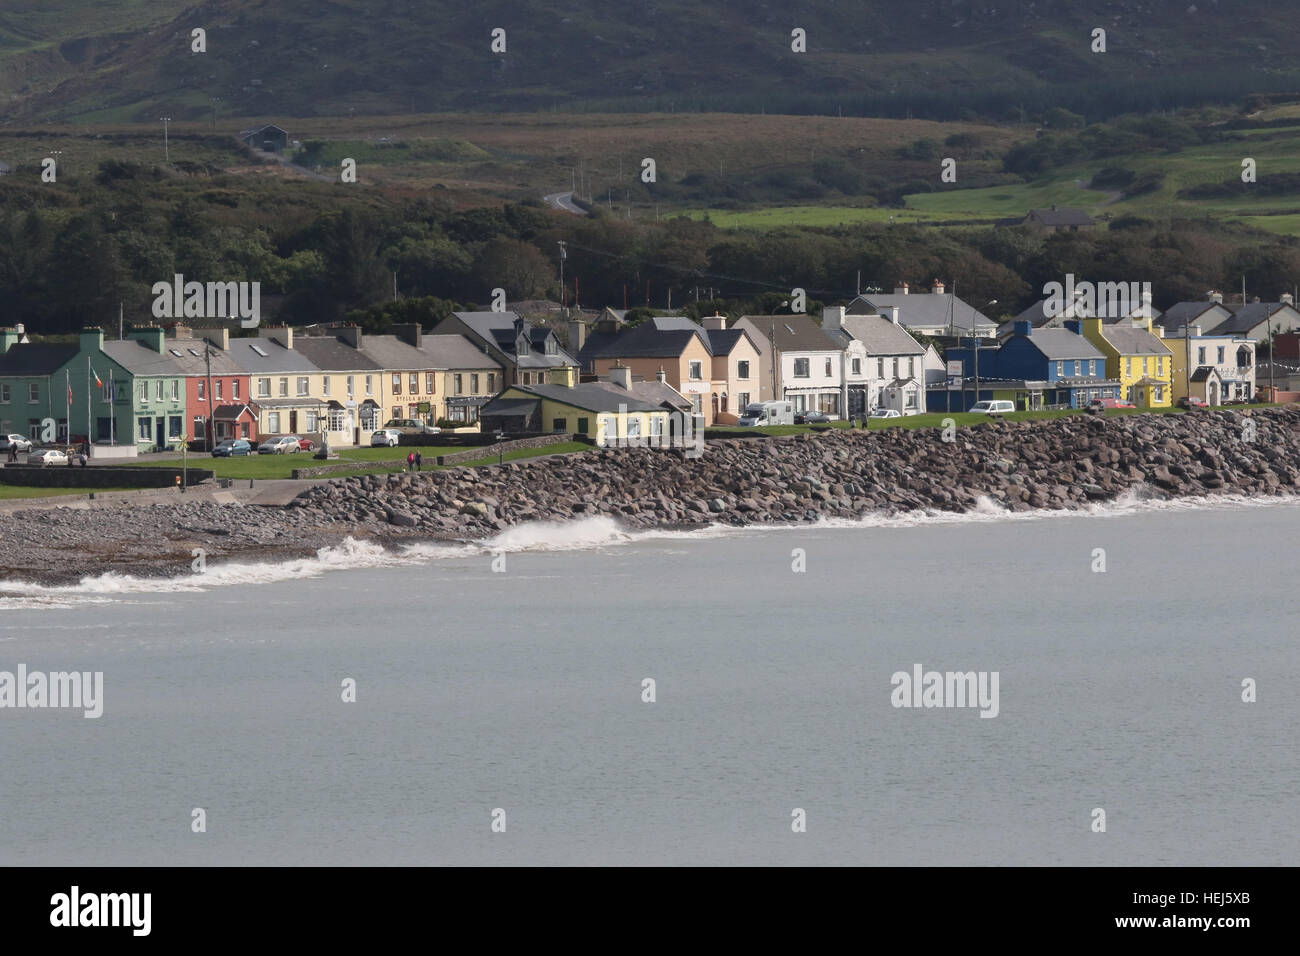 Maisons sur le front de mer dans un village côtier de Waterville, dans le comté de Kerry. L'Irlande. Banque D'Images